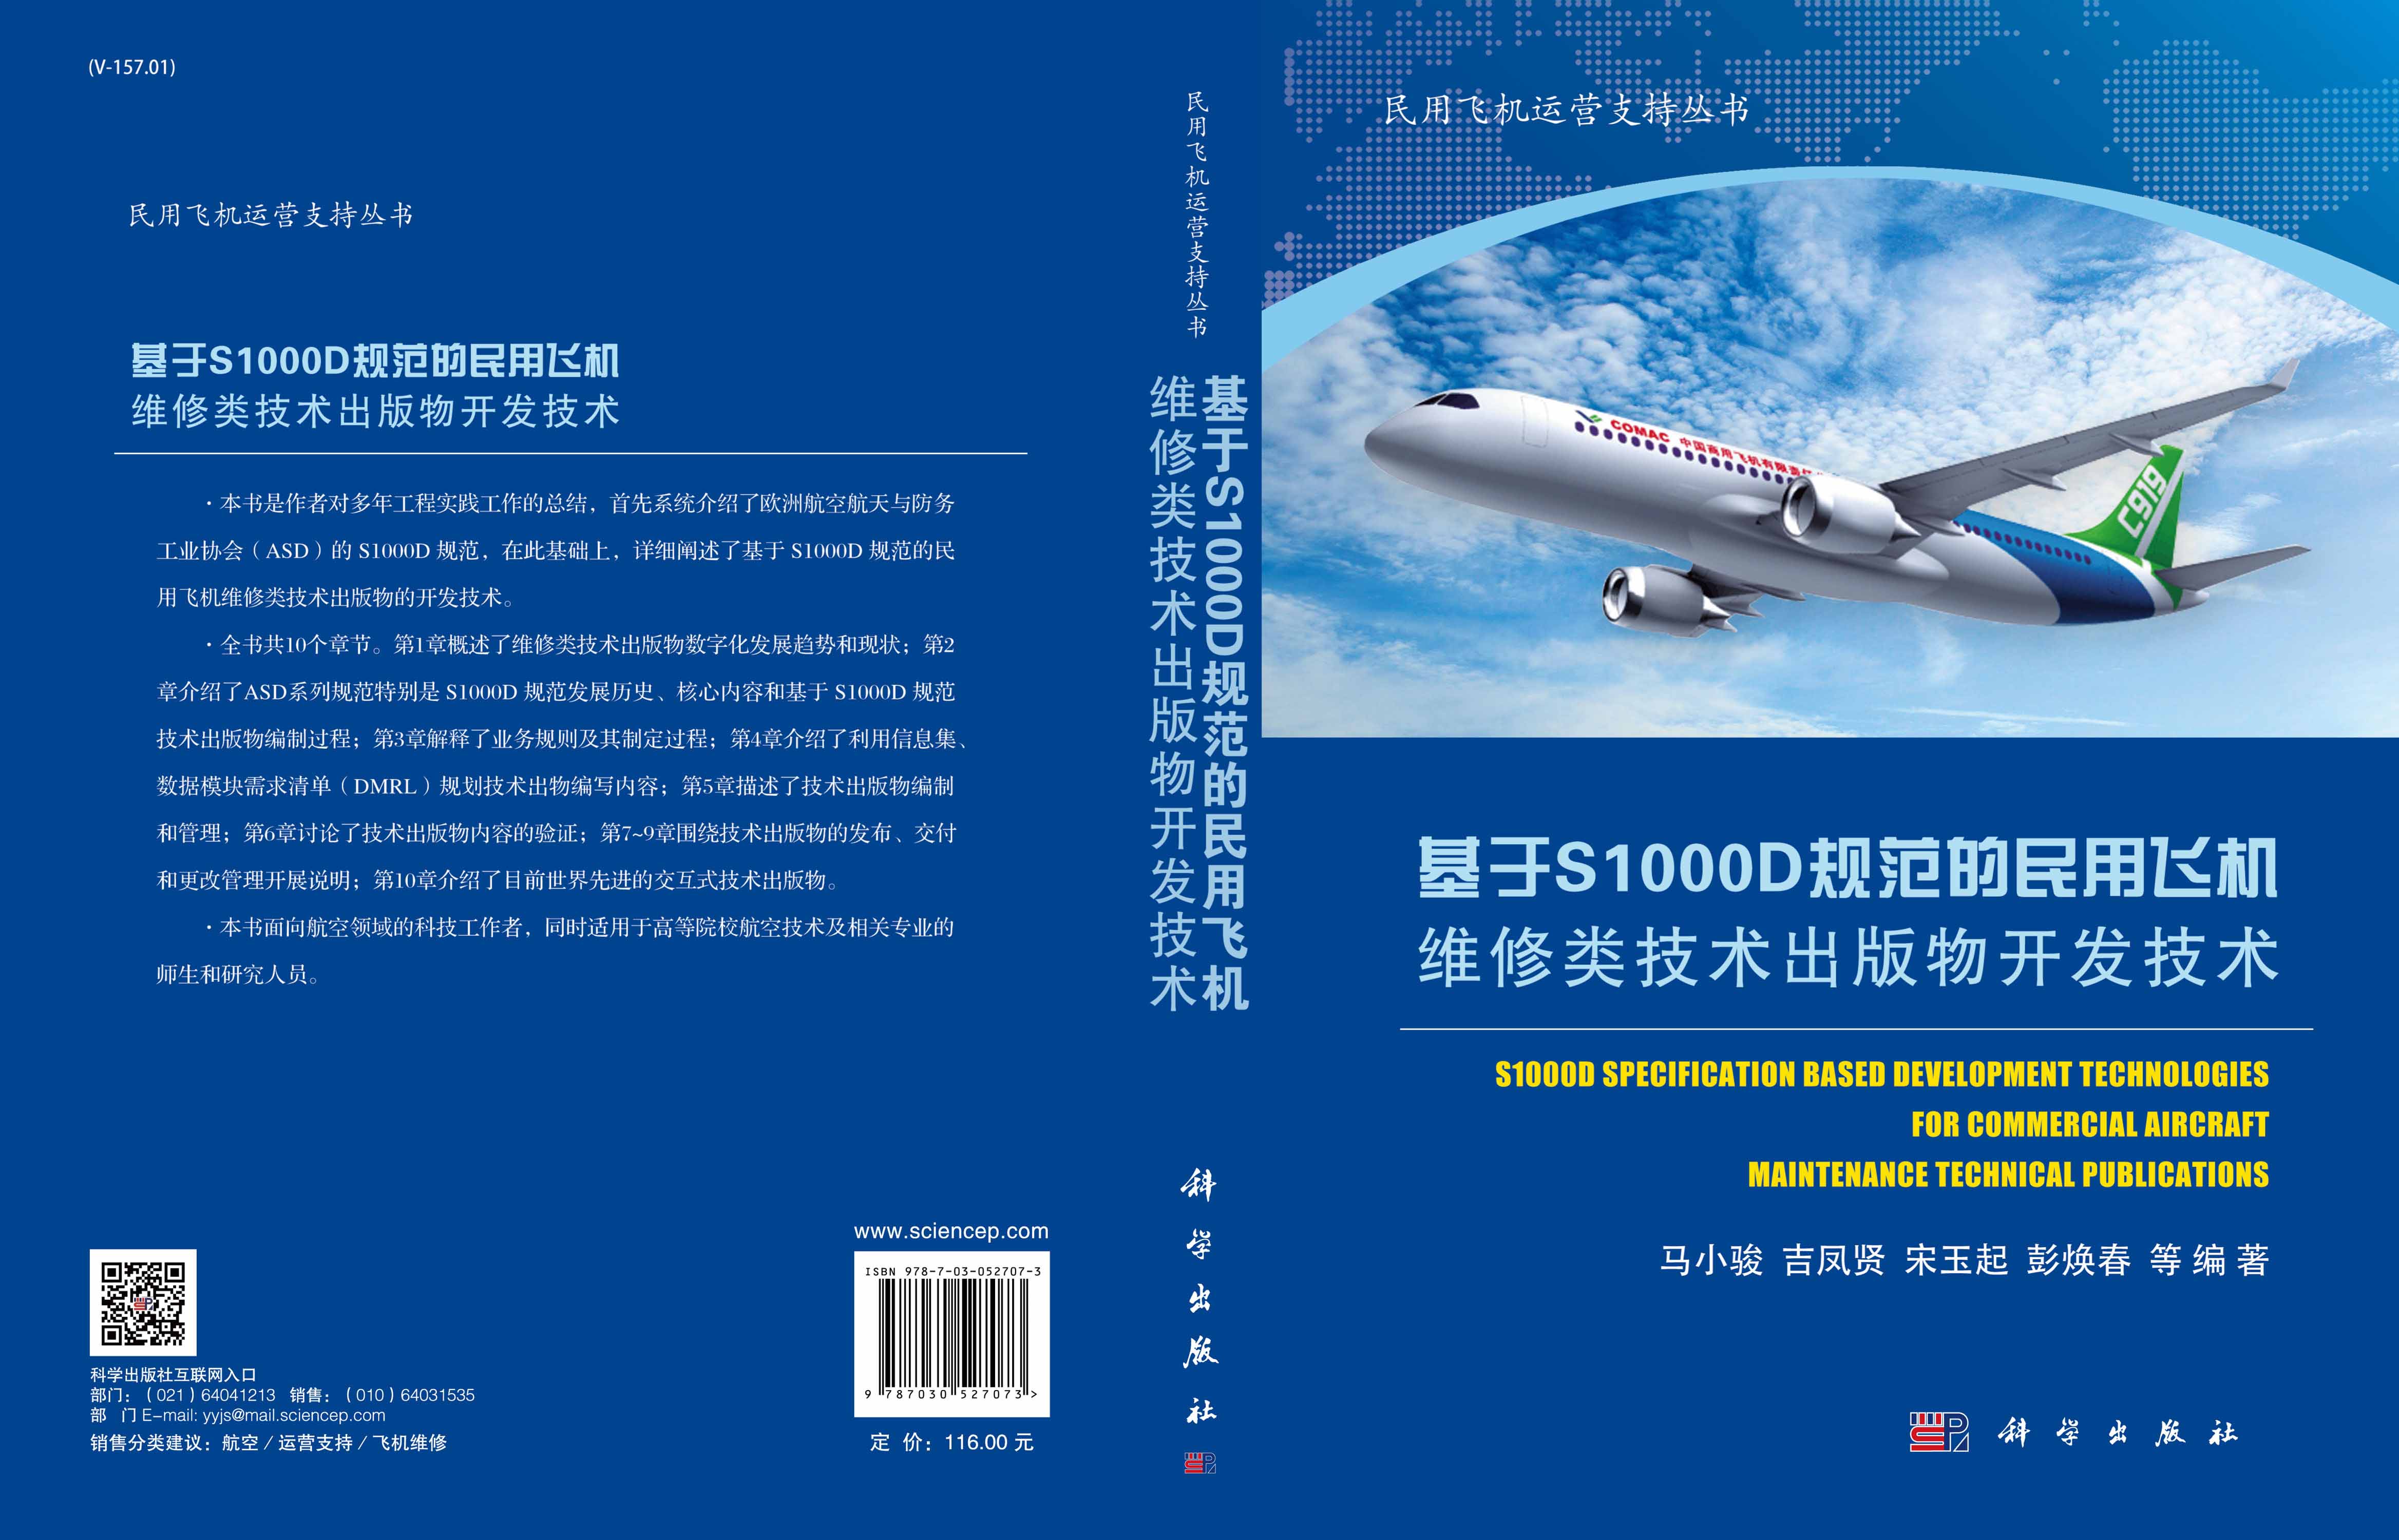 基于S1000D规范的民用飞机维修类技术出版物开发技术